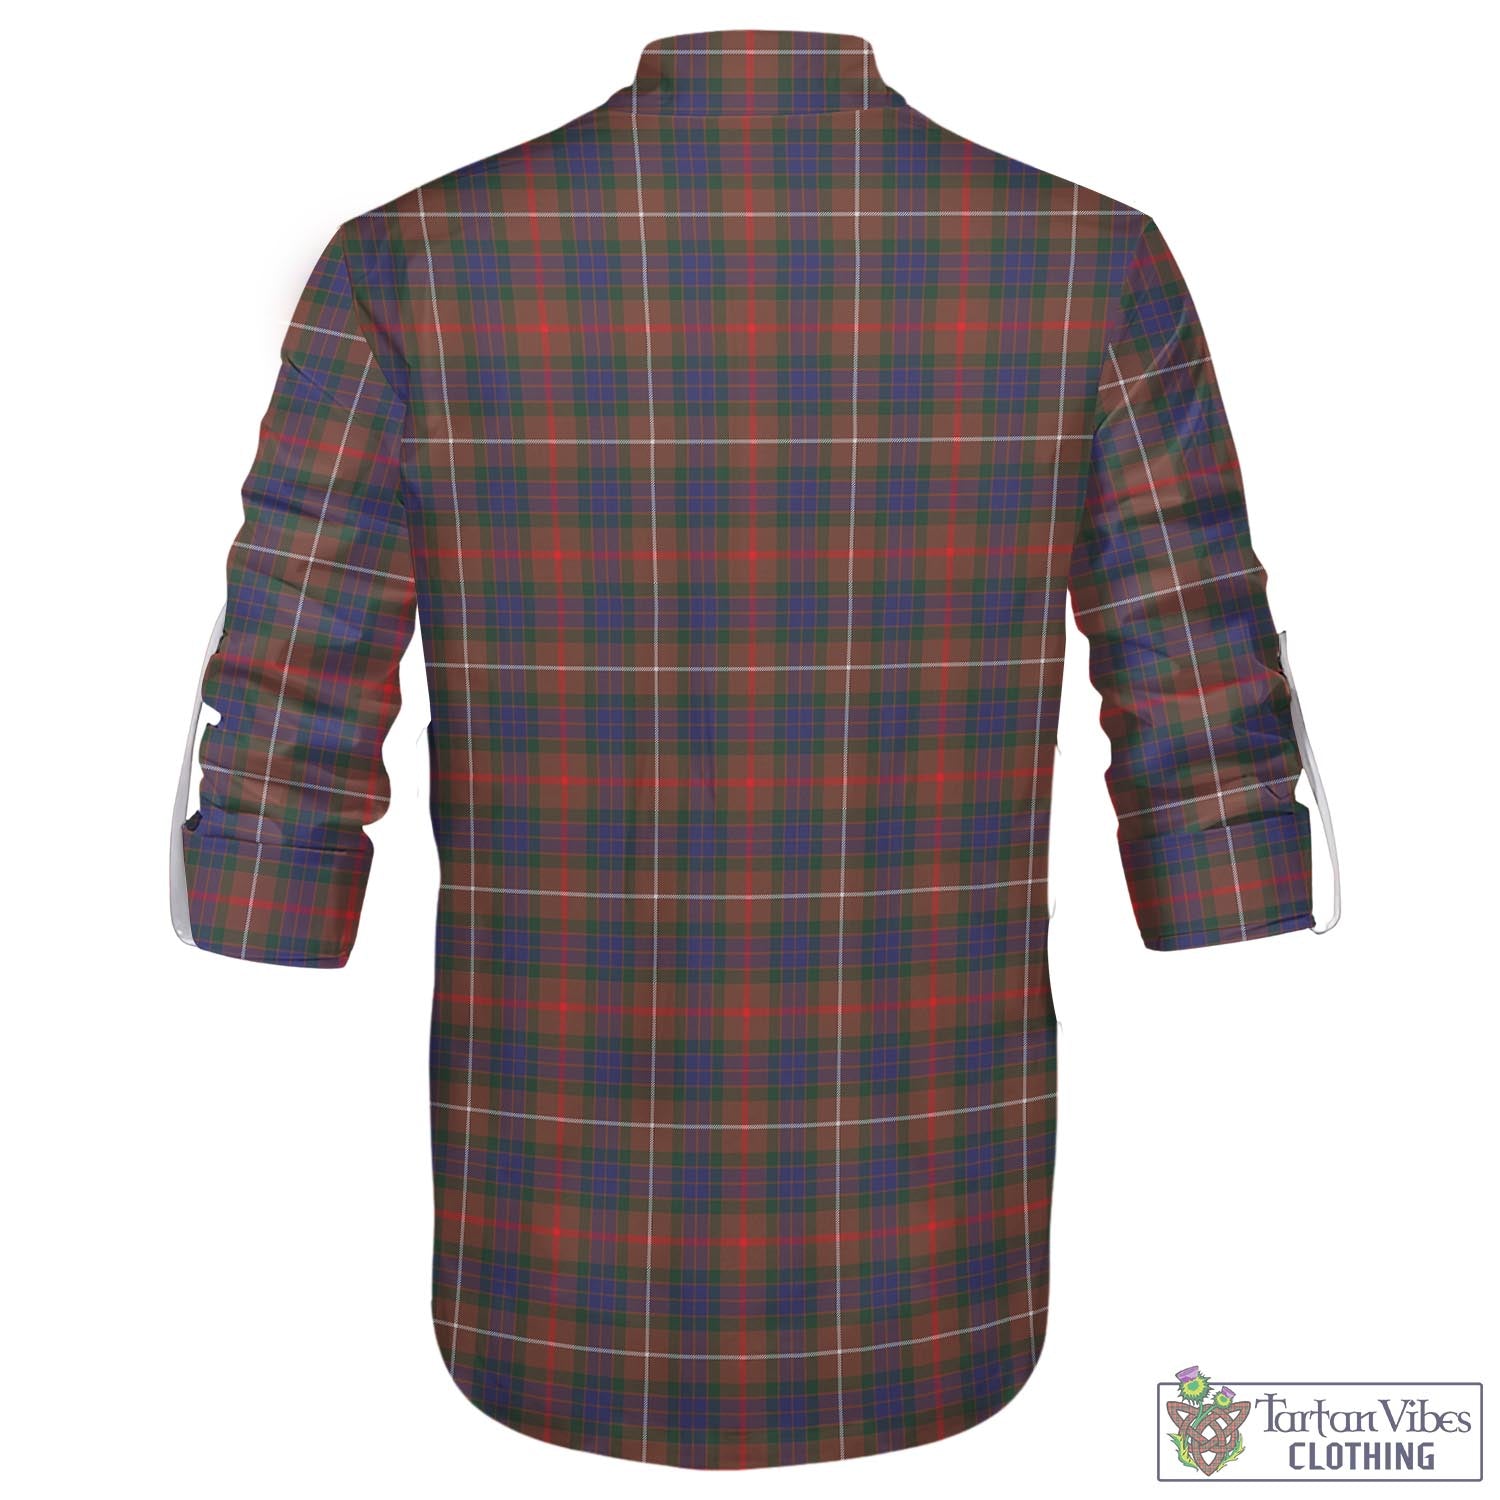 Tartan Vibes Clothing Fraser Hunting Modern Tartan Men's Scottish Traditional Jacobite Ghillie Kilt Shirt with Family Crest